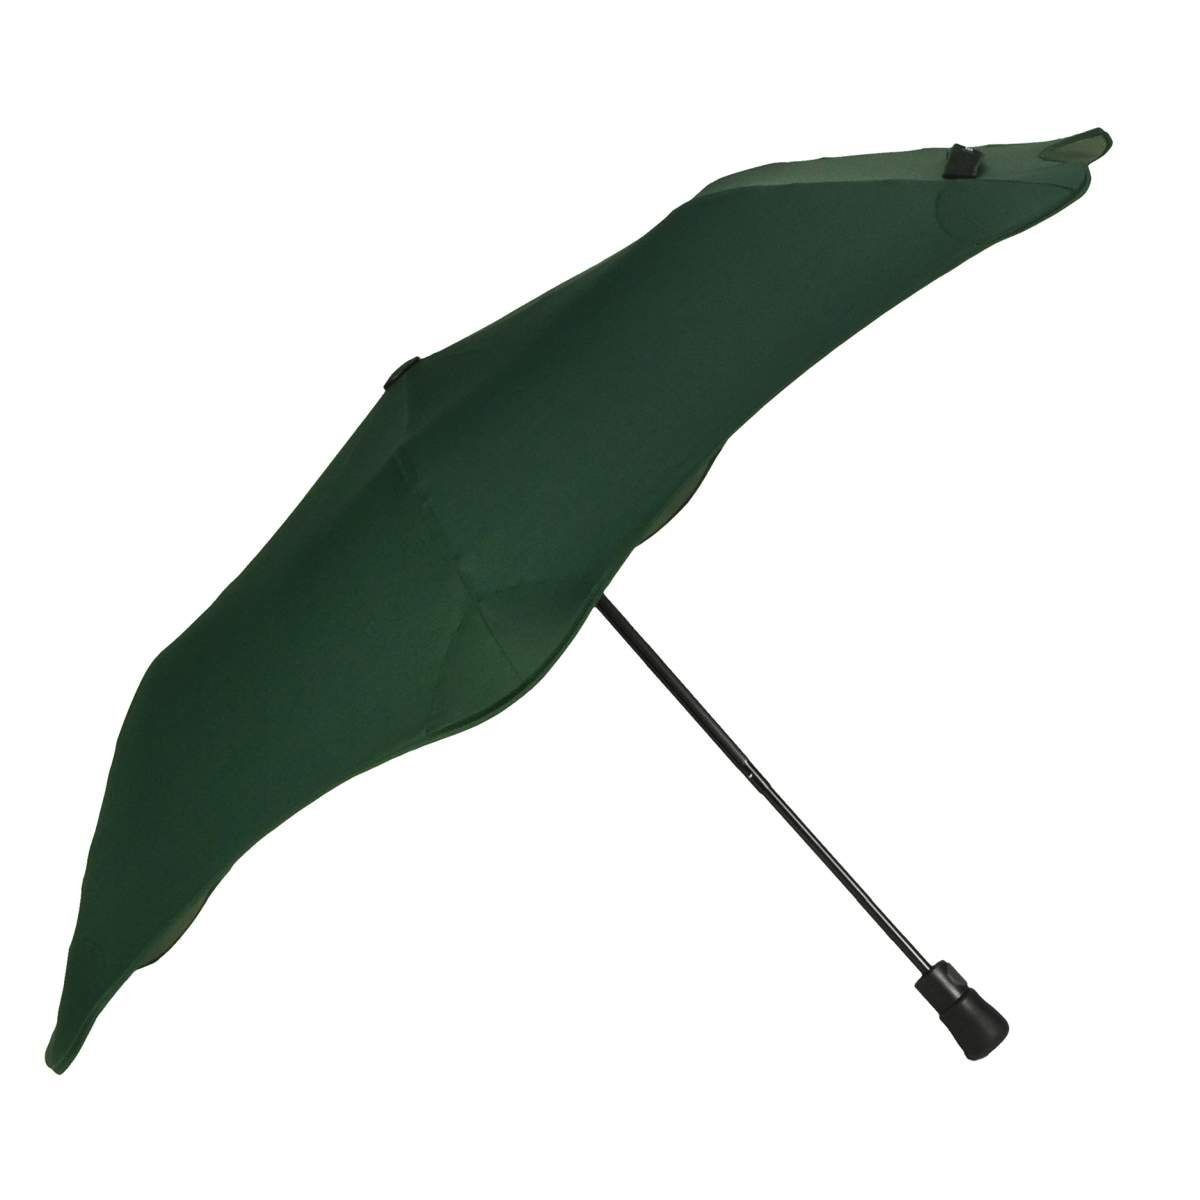 Blunt Taschenregenschirm Metro, Regenschirm, Taschenschirm, für Auto und unterwegs, 96cm Durchmesser